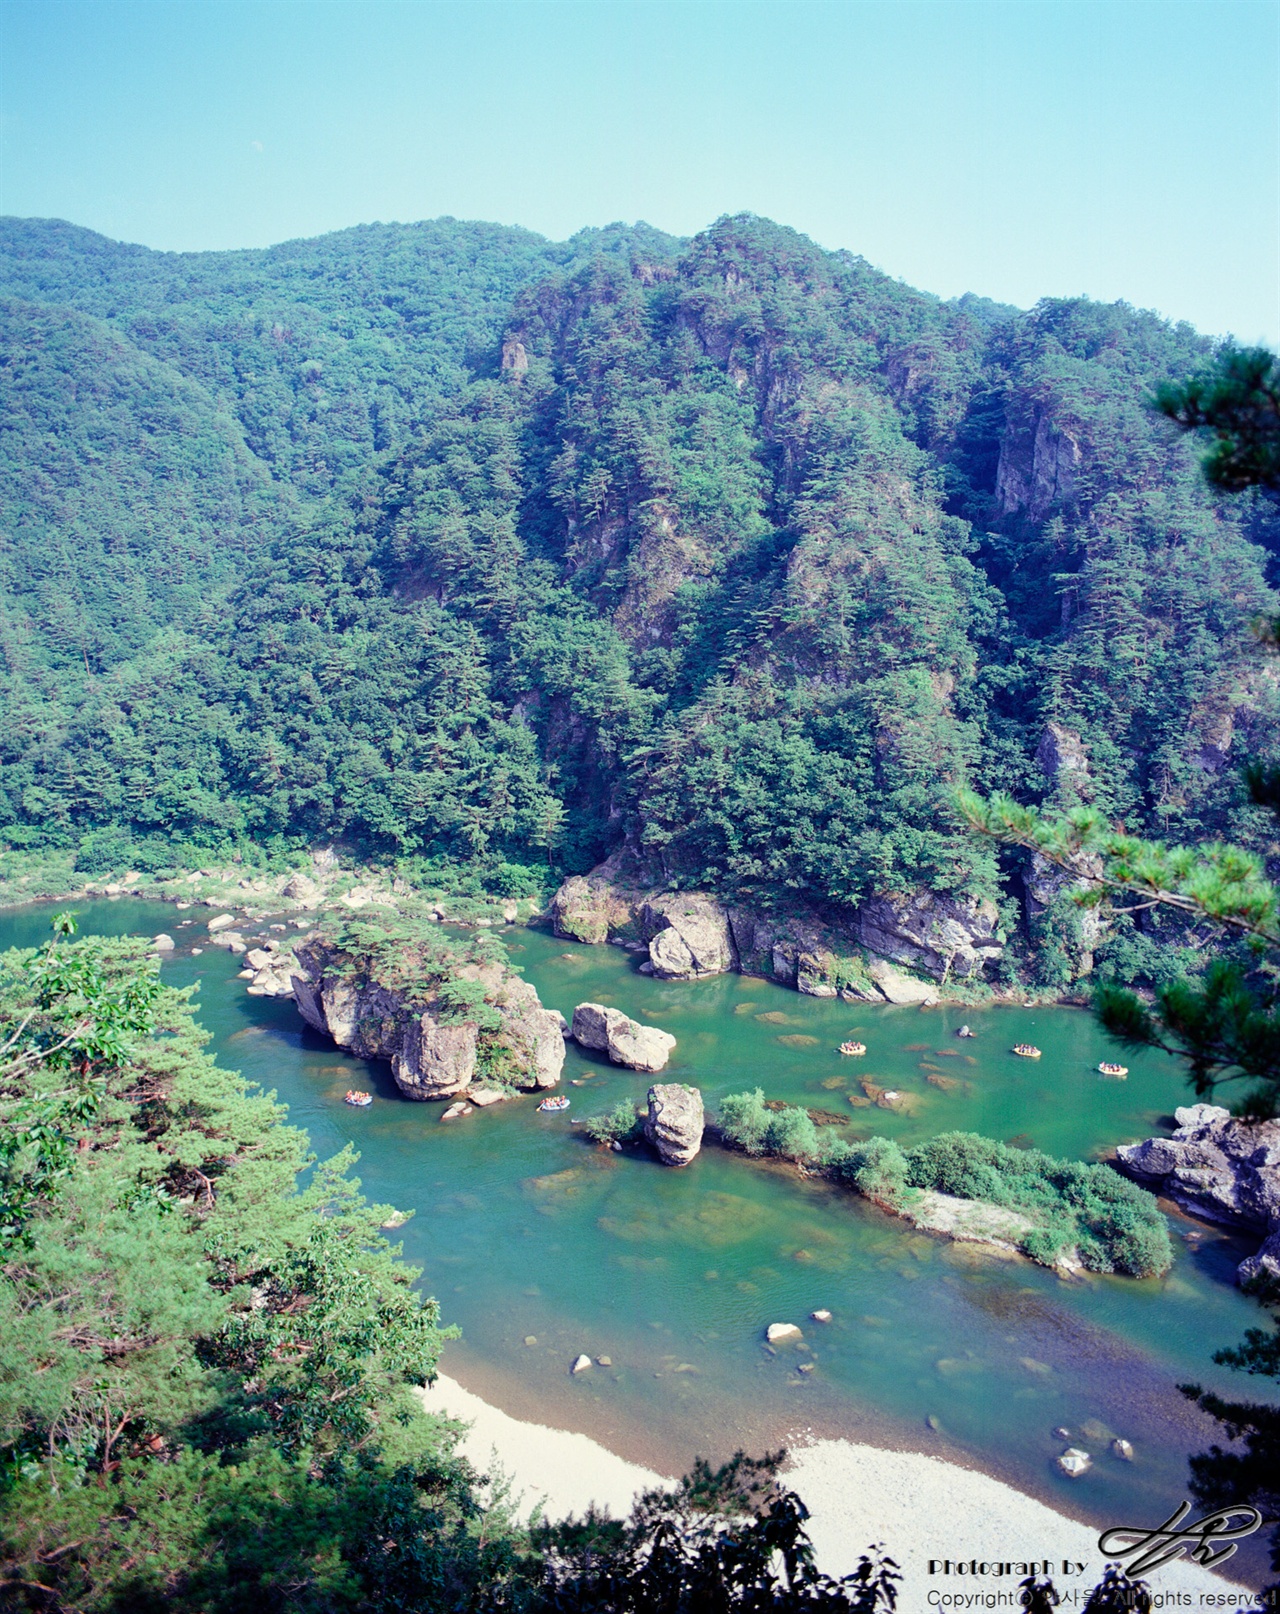 전망바위에서 (6*7중형/Ektar100)수면 위 보트들의 크기를 보면 강과 바위들의 규모를 짐작할 수 있다.